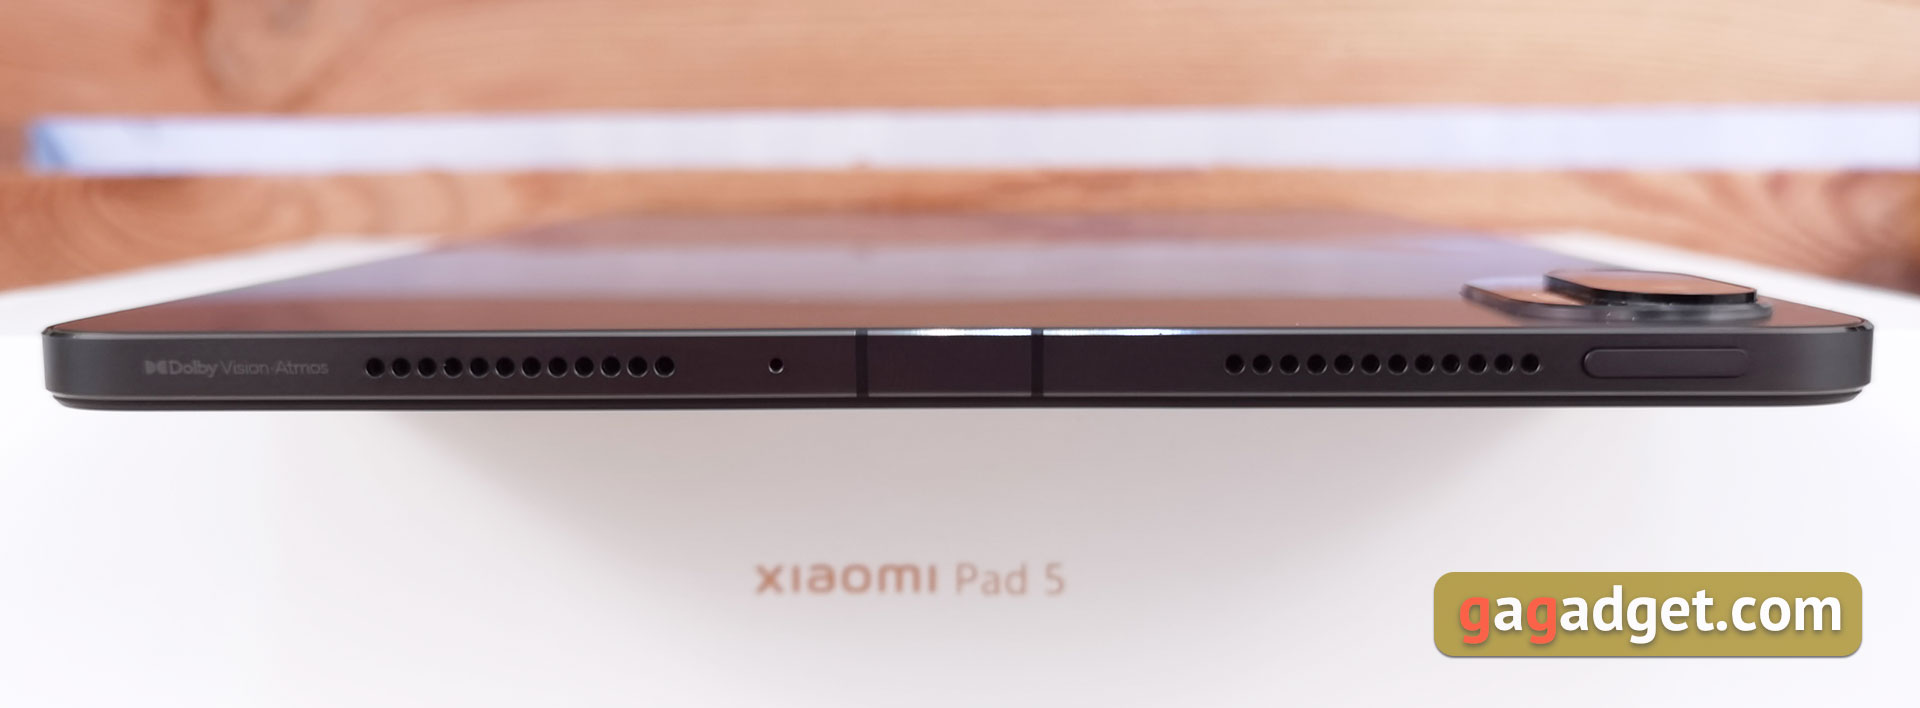 Xiaomi Pad 5 Test: Allesfresser von Content-13